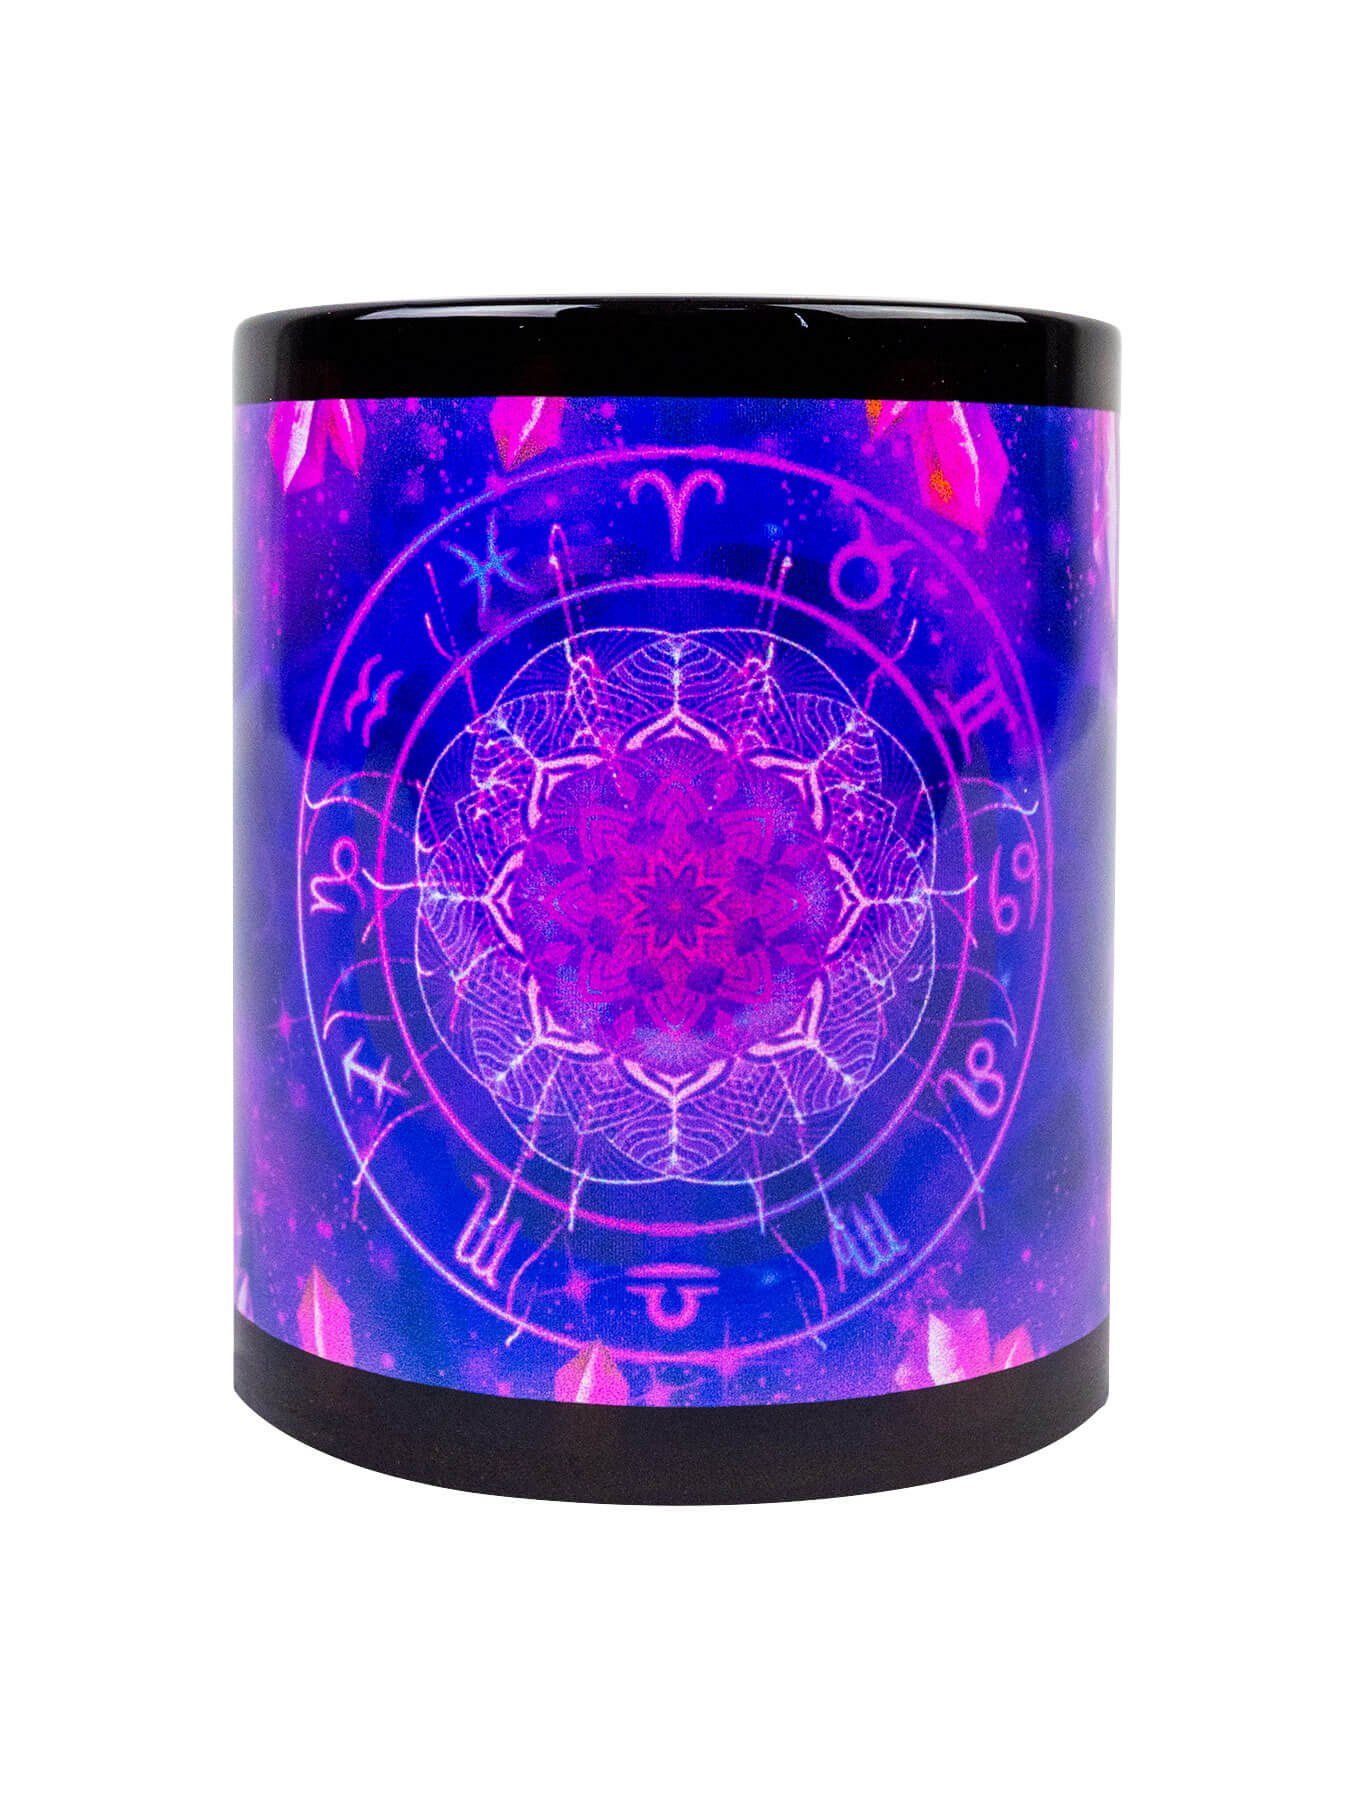 PSYWORK Tasse Fluo Cup Neon Signs Violet", Motiv leuchtet Keramik, UV-aktiv, "Zodiac Tasse Schwarzlicht unter